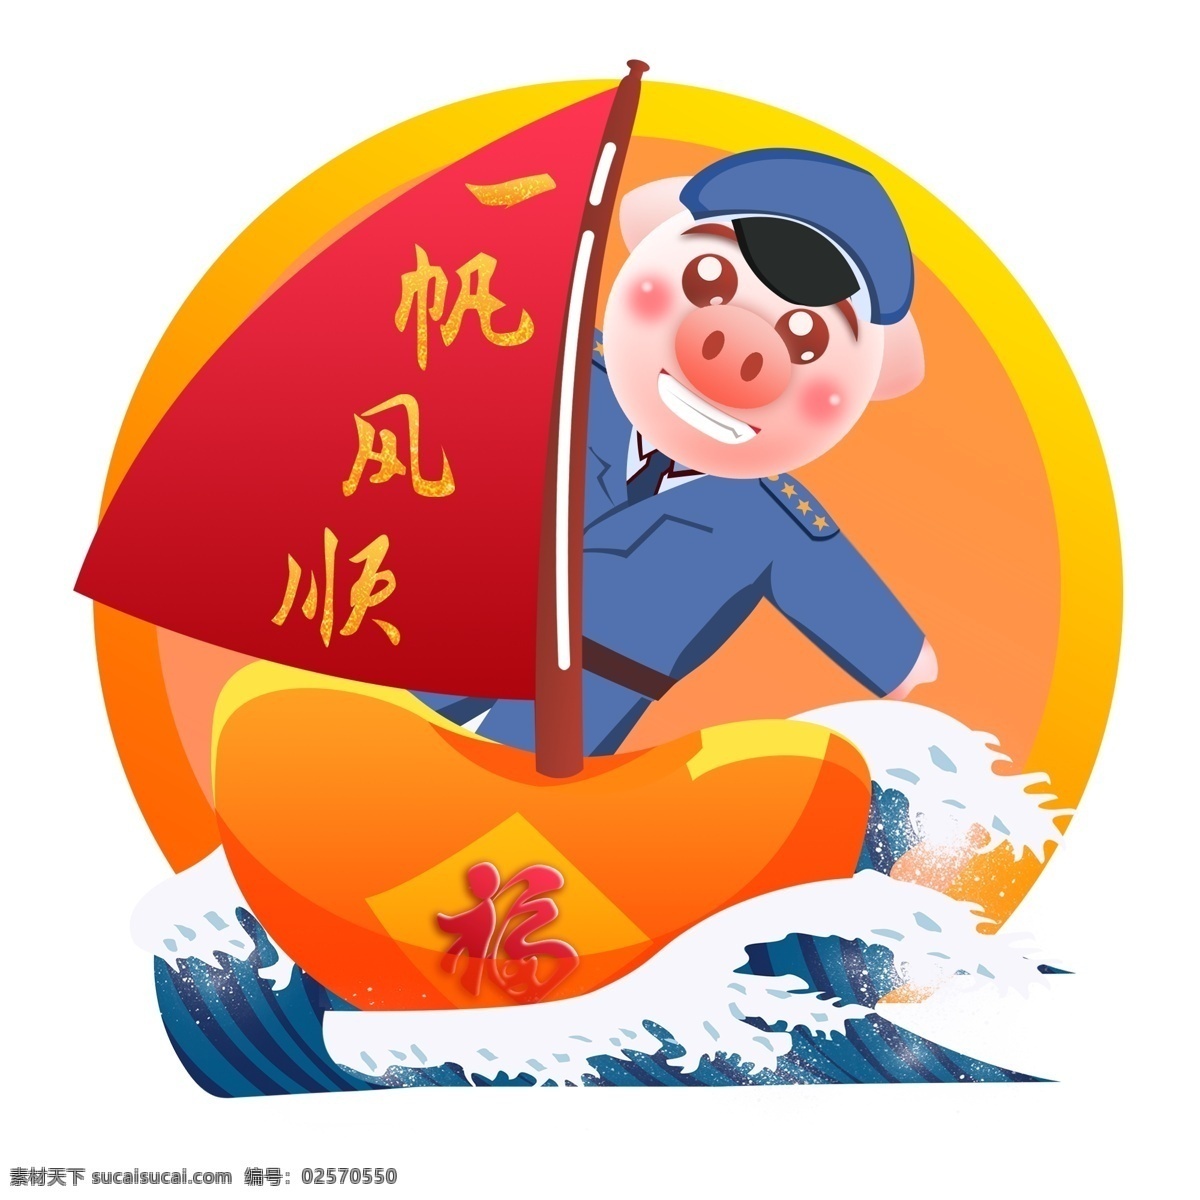 2019 春节 拜年 生肖 猪 一帆风顺 船 海浪 卡通 可爱 浪花 船长 新年快乐 过年 送福